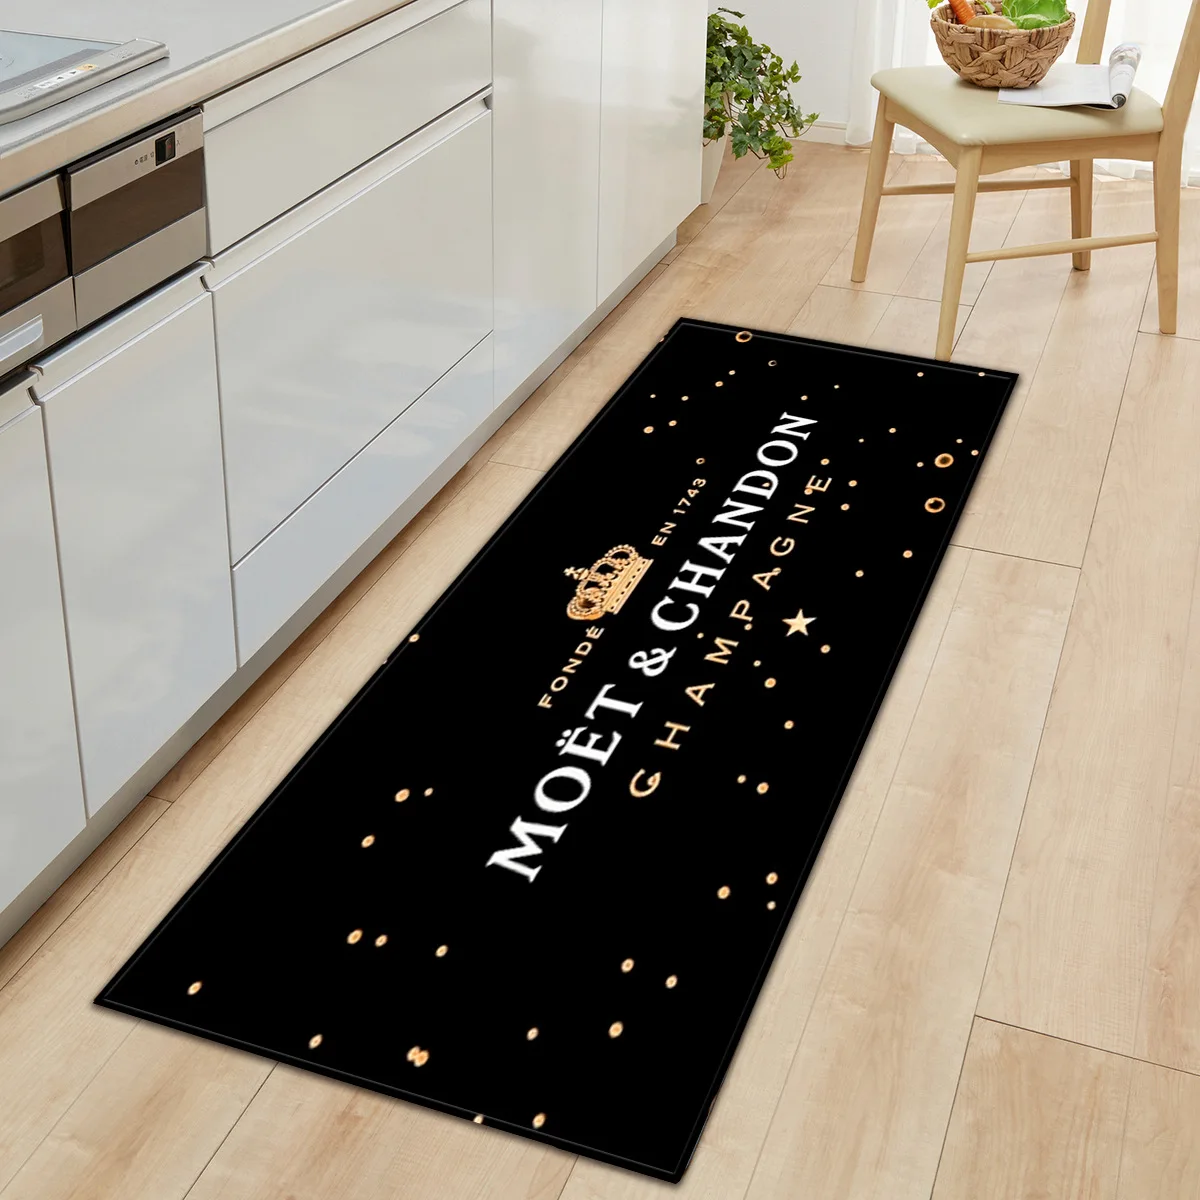 Moet&Chandon Brand logo floor mat, kitchen, household bathroom non slip door mat office carpet kitchen absorbent strip floor mat